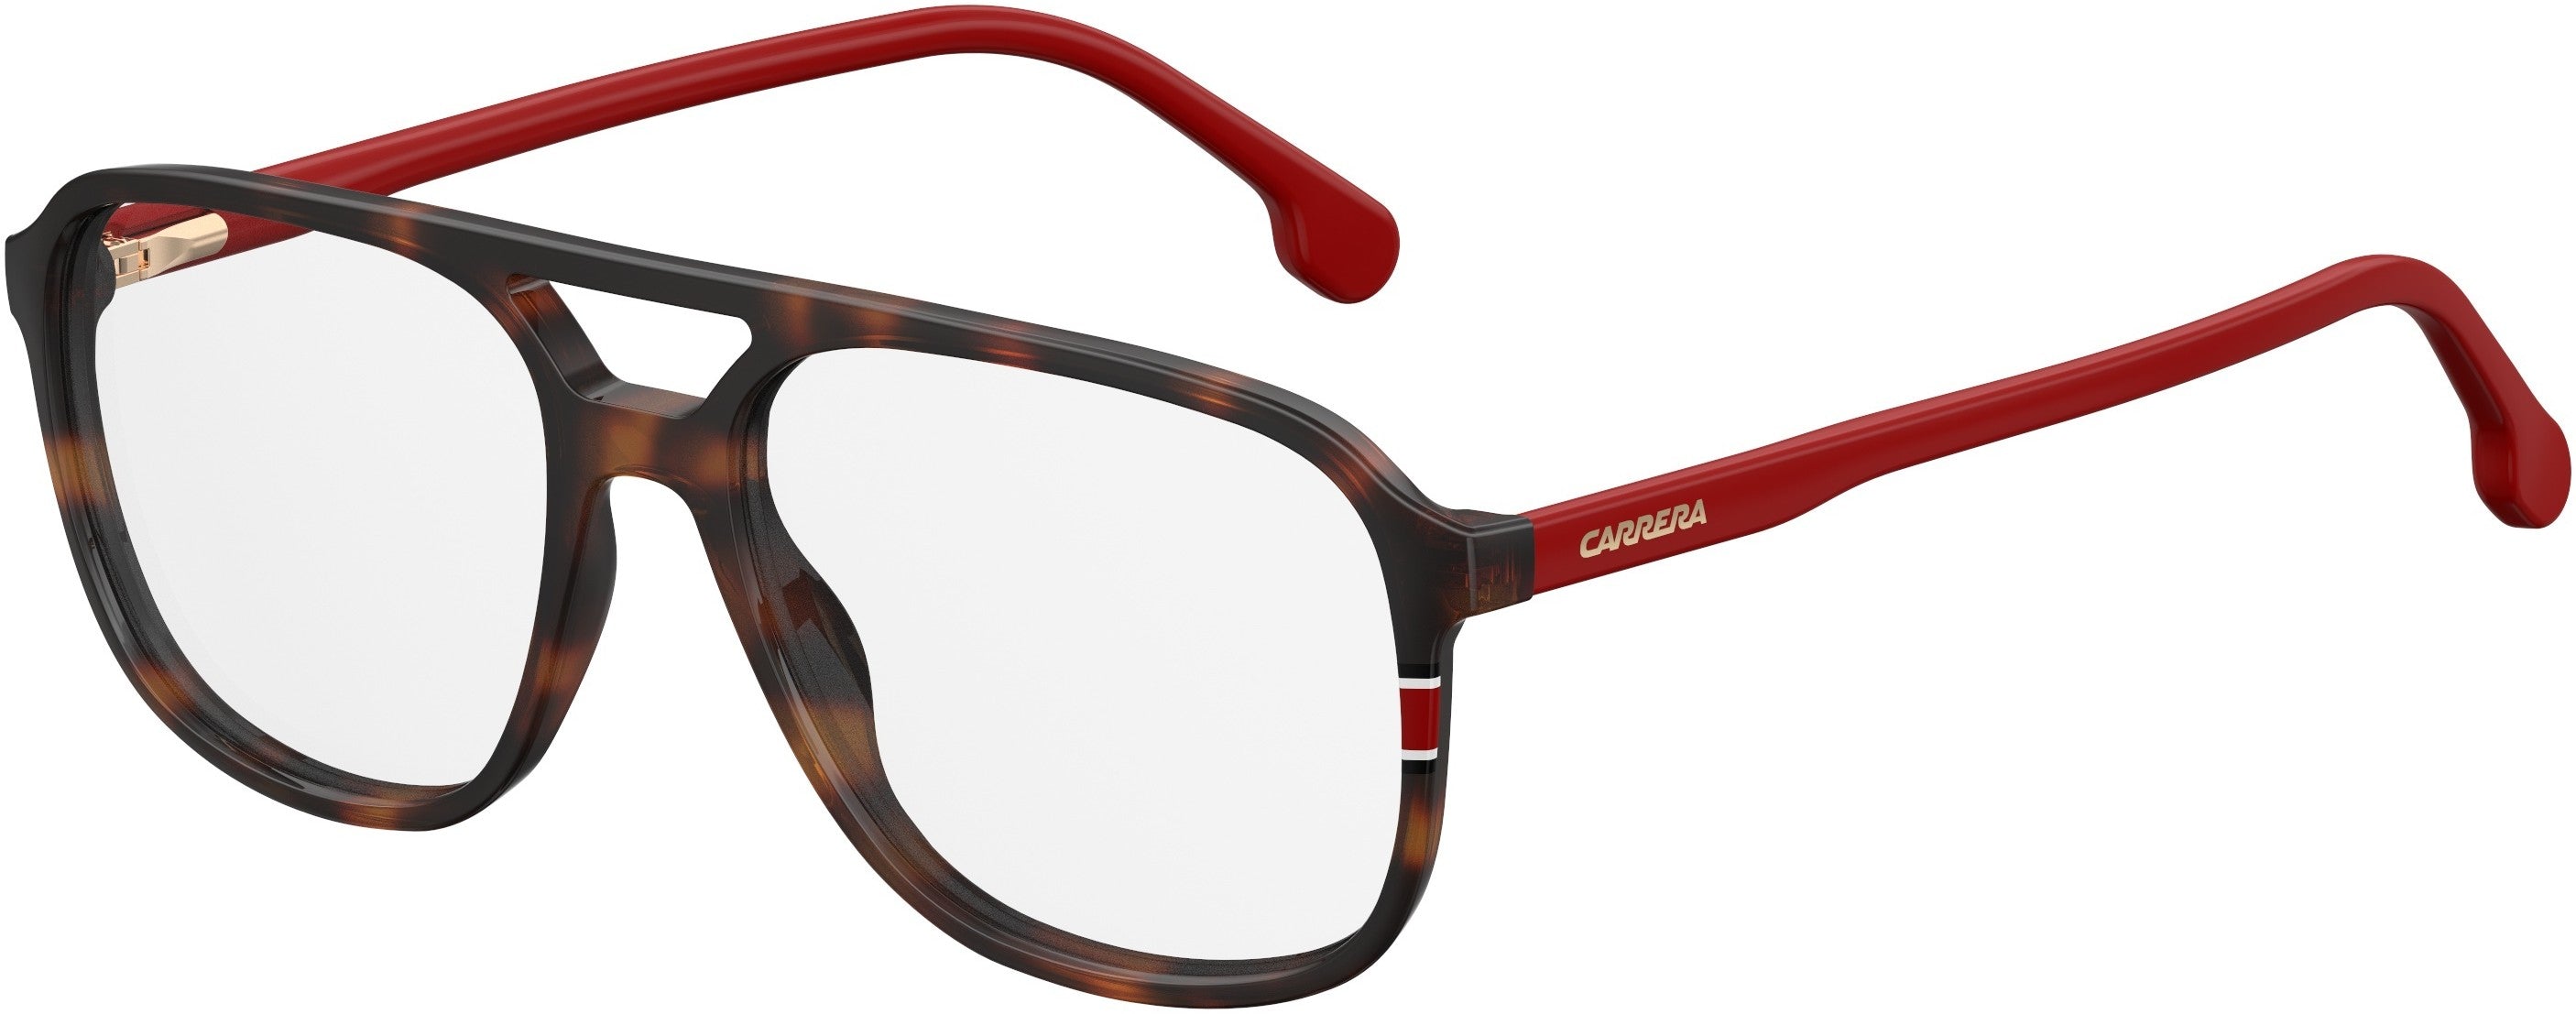  Carrera 176 Rectangular Eyeglasses 0O63-0O63  Havana Red (00 Demo Lens)